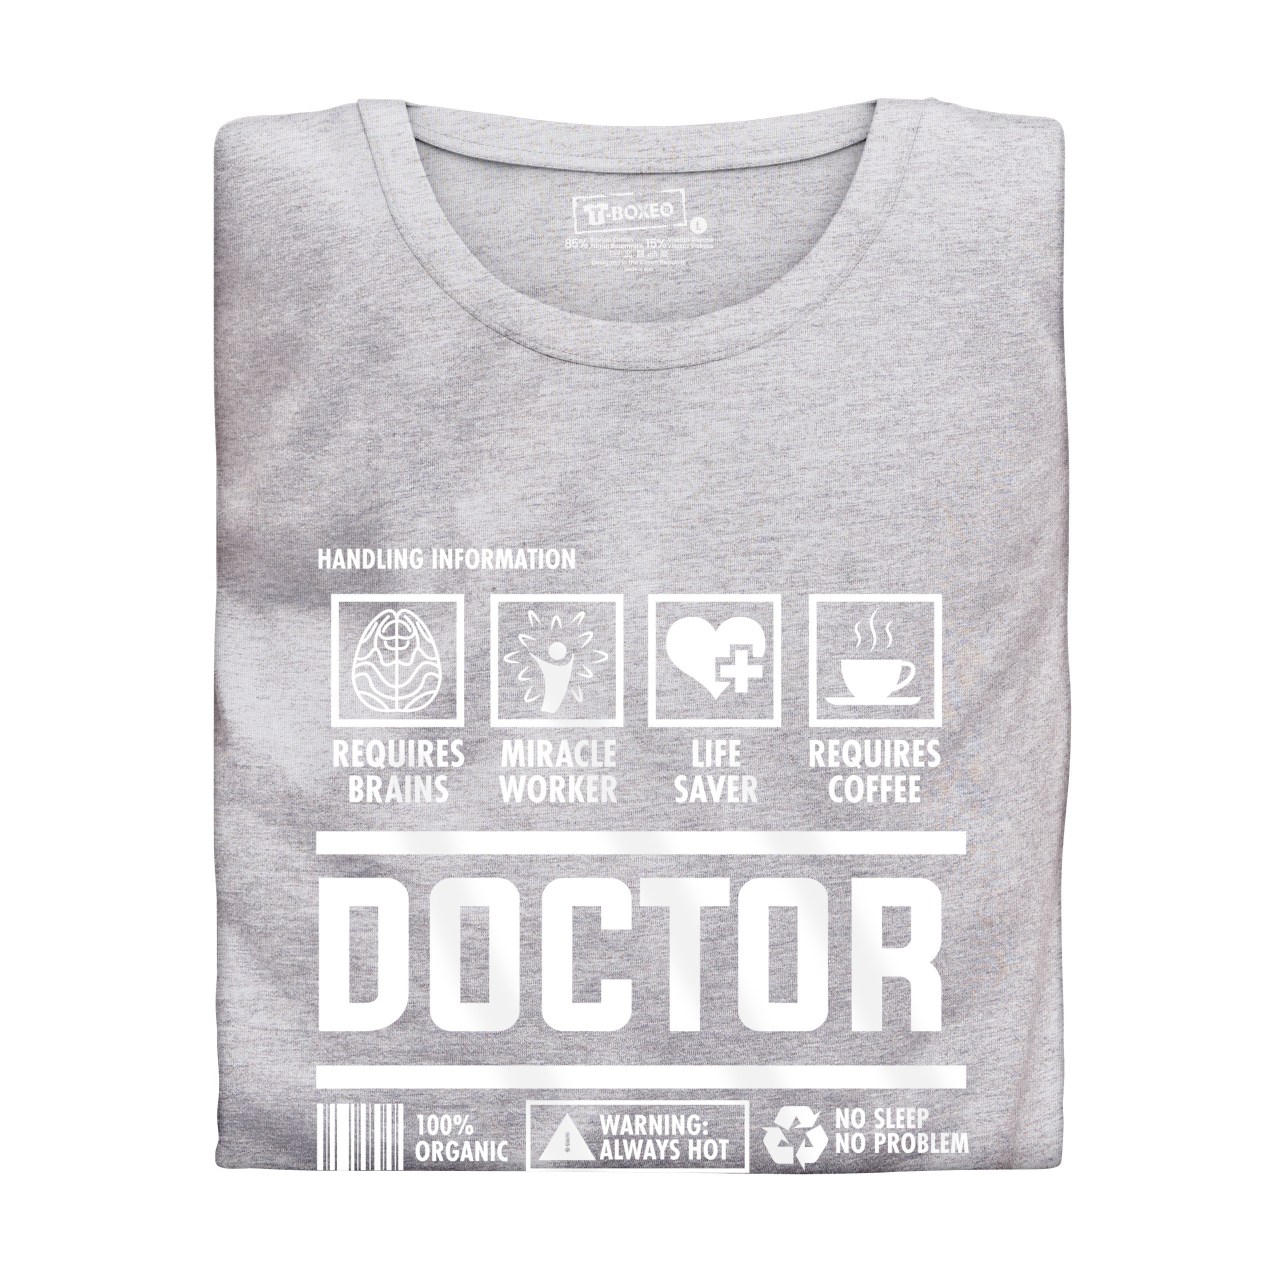 Dámské tričko s potiskem "Doctor"